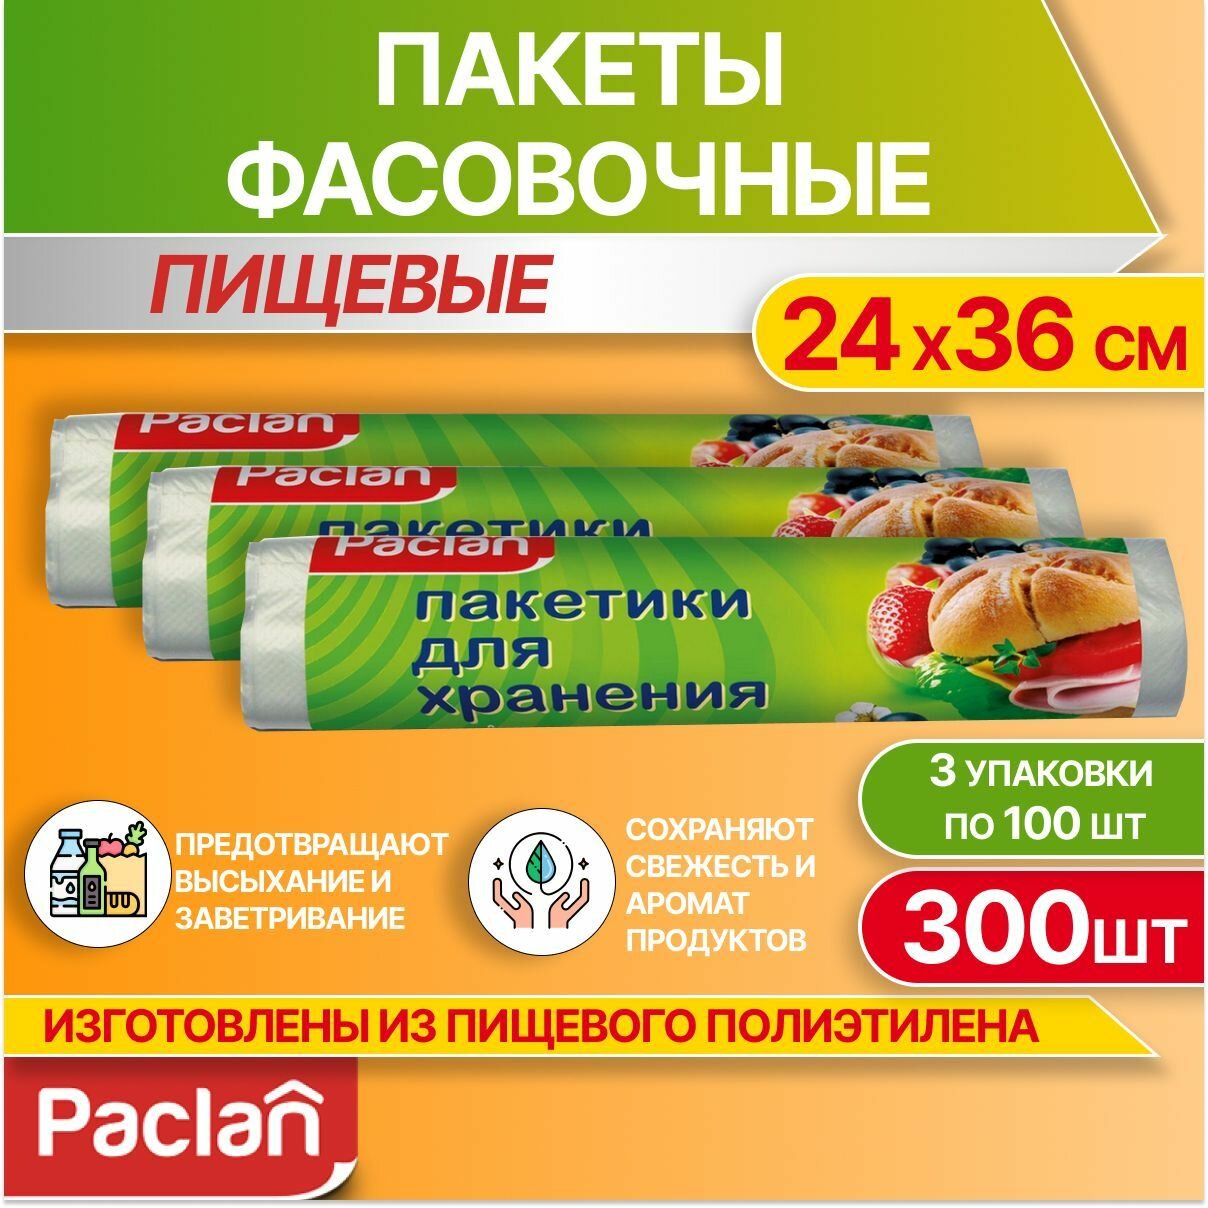 Пакеты фасовочные пищевые для хранения продуктов, 3 упаковки по 100 шт, 24 х 36 см, Paclan